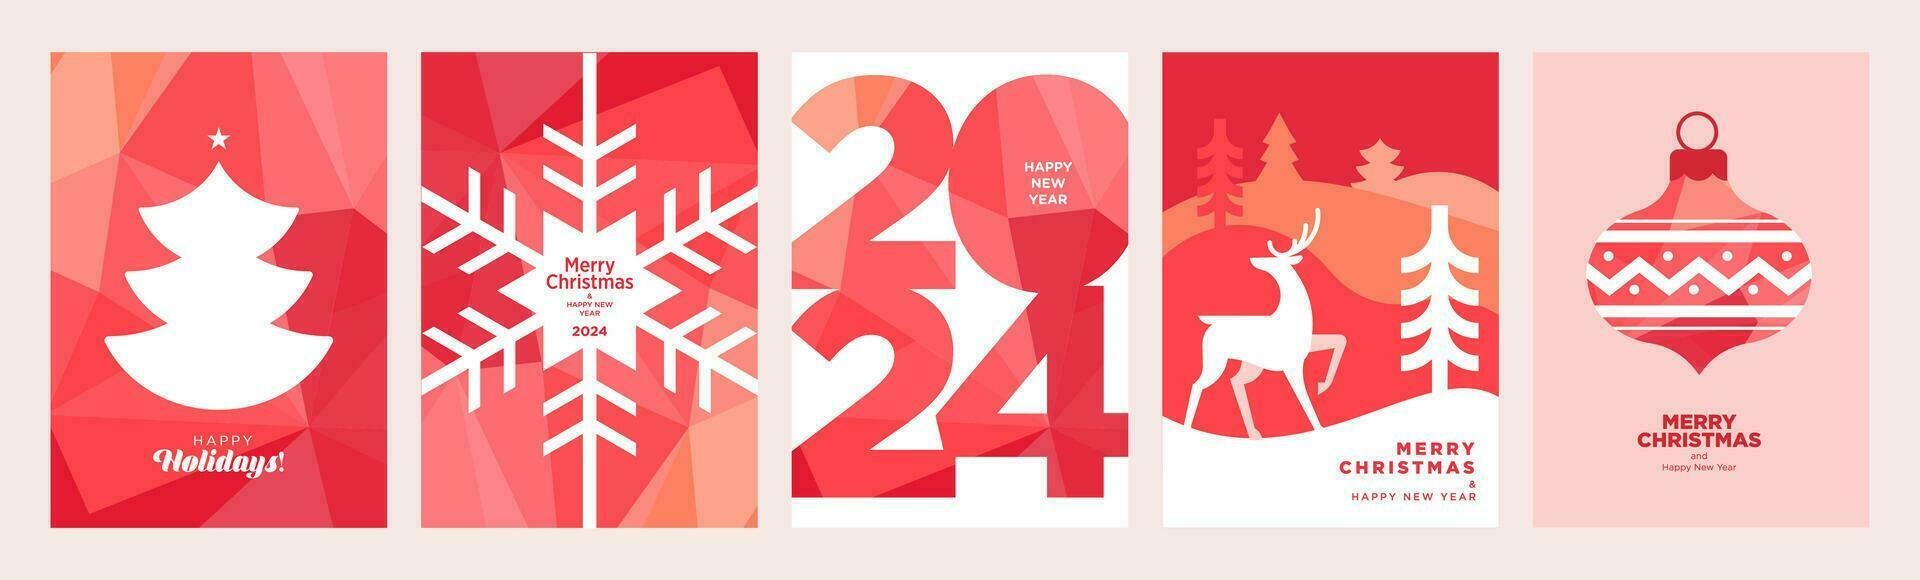 ensemble de Noël et Nouveau année 2024 salutation cartes. vecteur illustration concepts pour graphique et la toile conception, social médias bannière, commercialisation matériel.